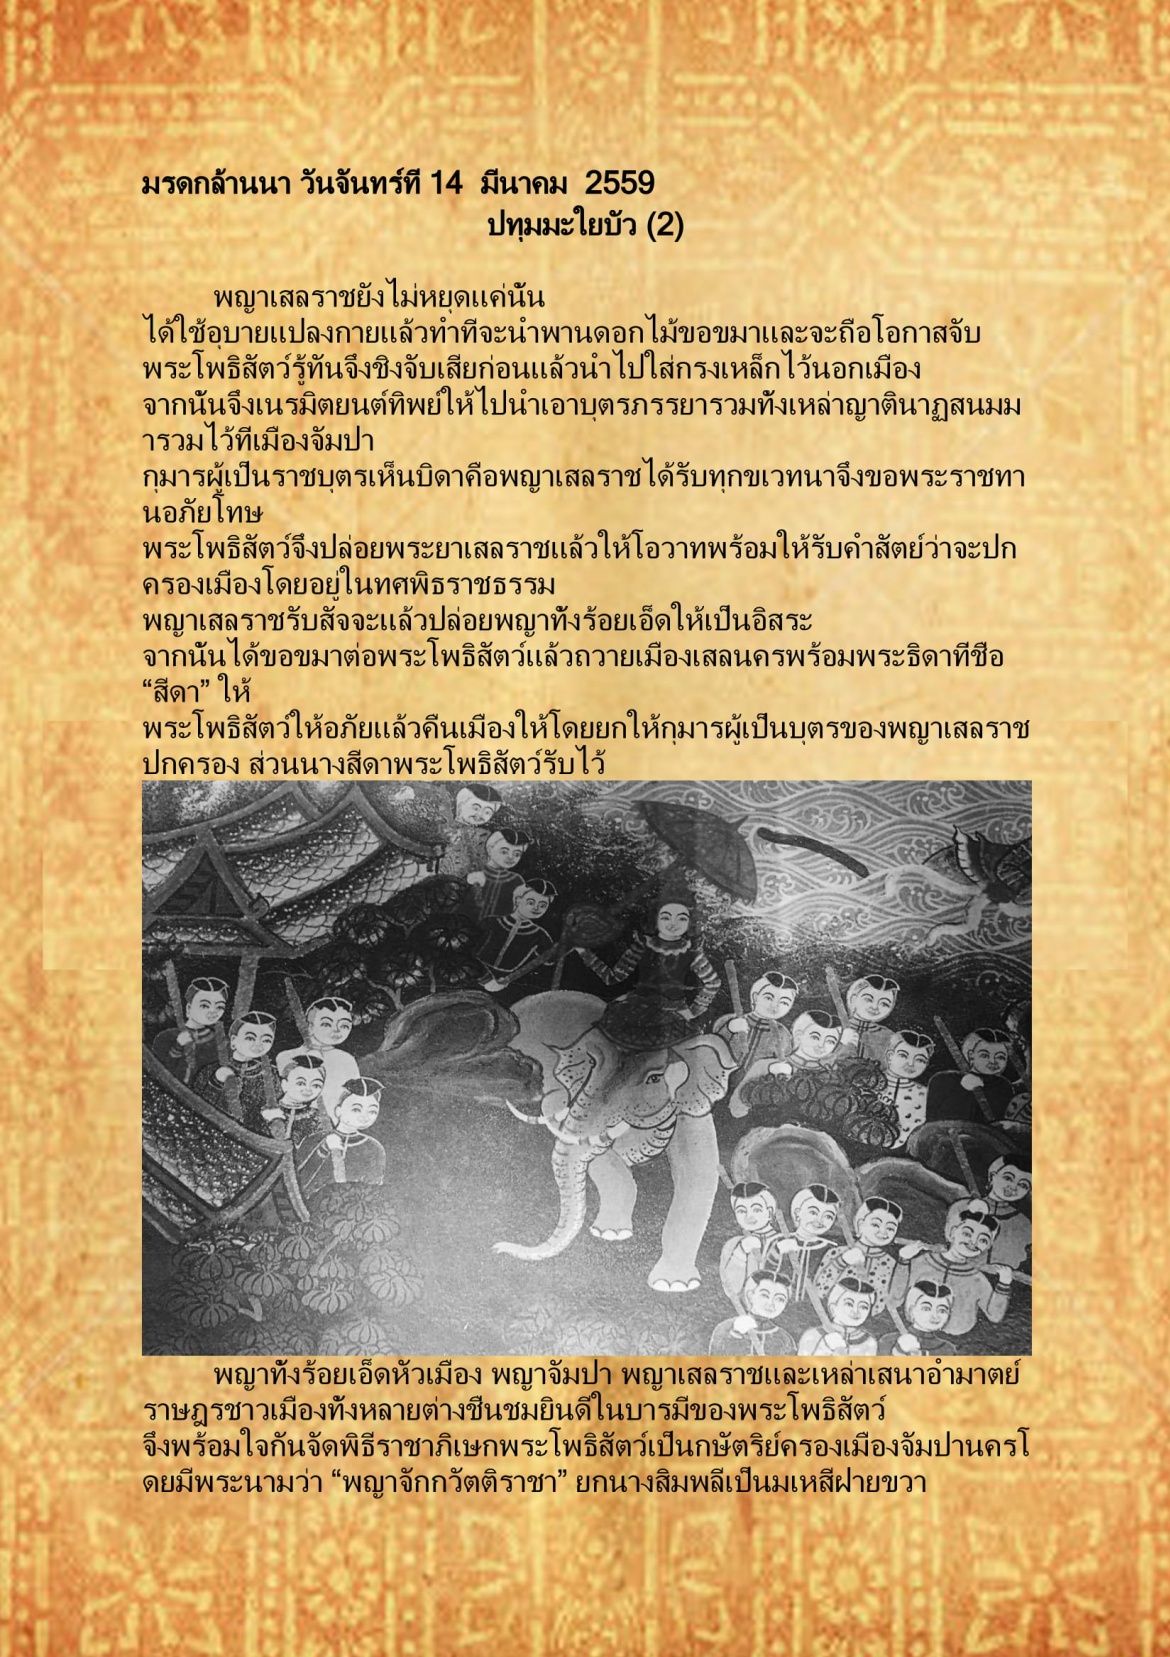 ปทุมมะใยบัว (2) - 14  มีนาคม  2559